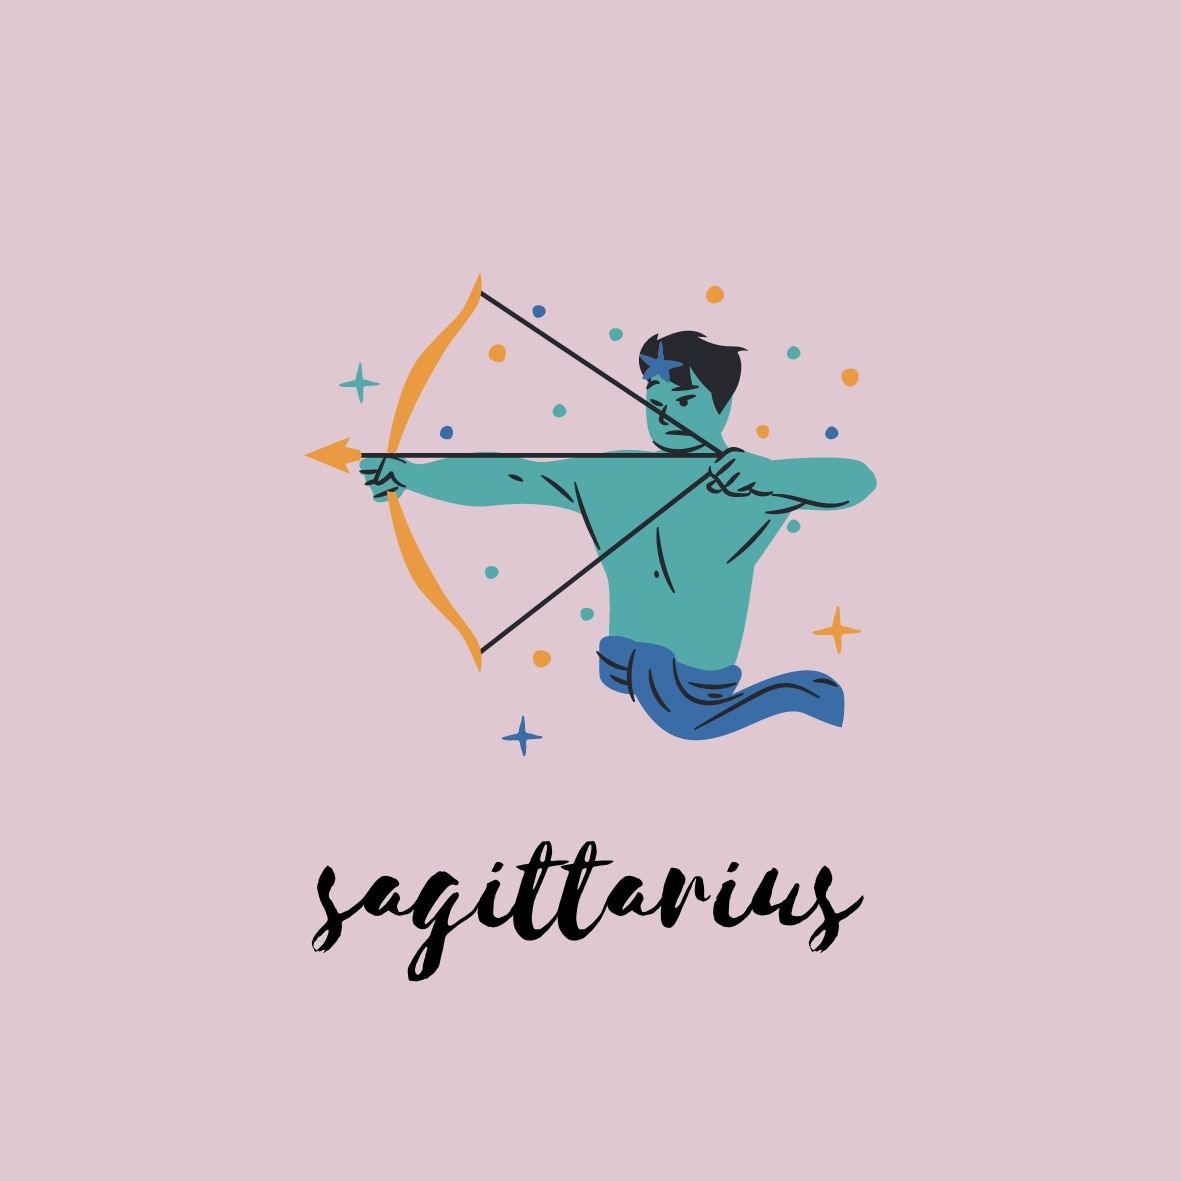 November Horoscope: Sagittarius